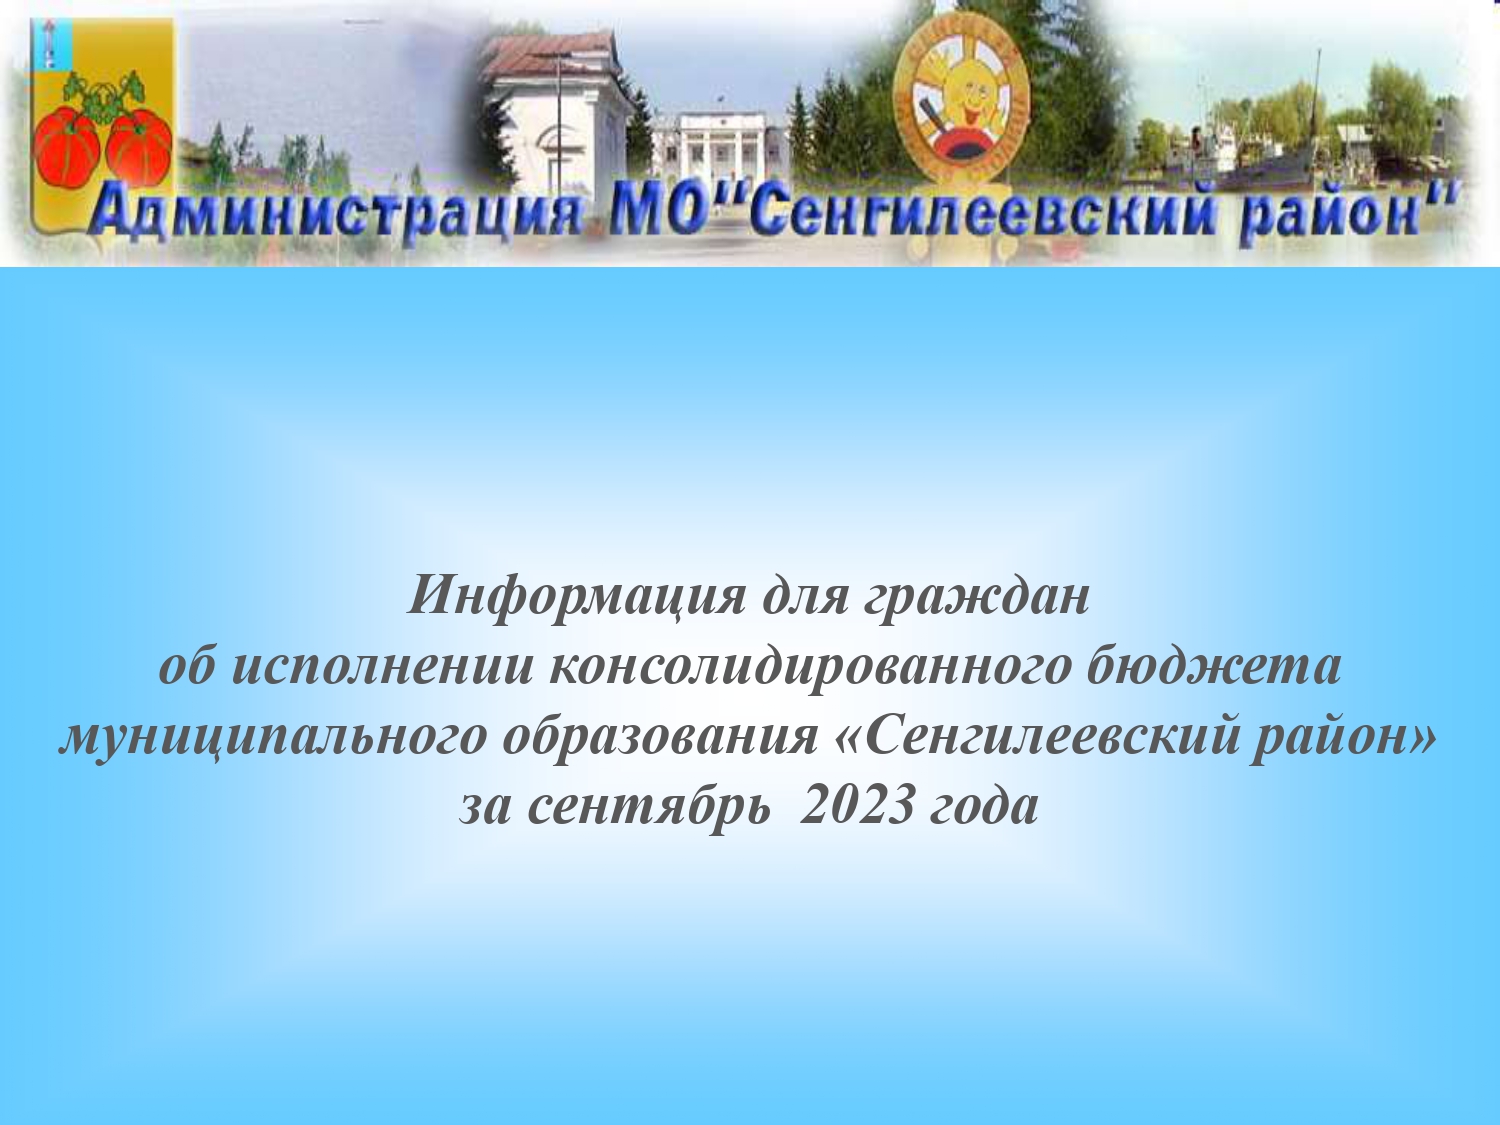 Информация для граждан об исполнении консолидированного бюджета муниципального образования «Сенгилеевский район» за сентябрь  2023 года.